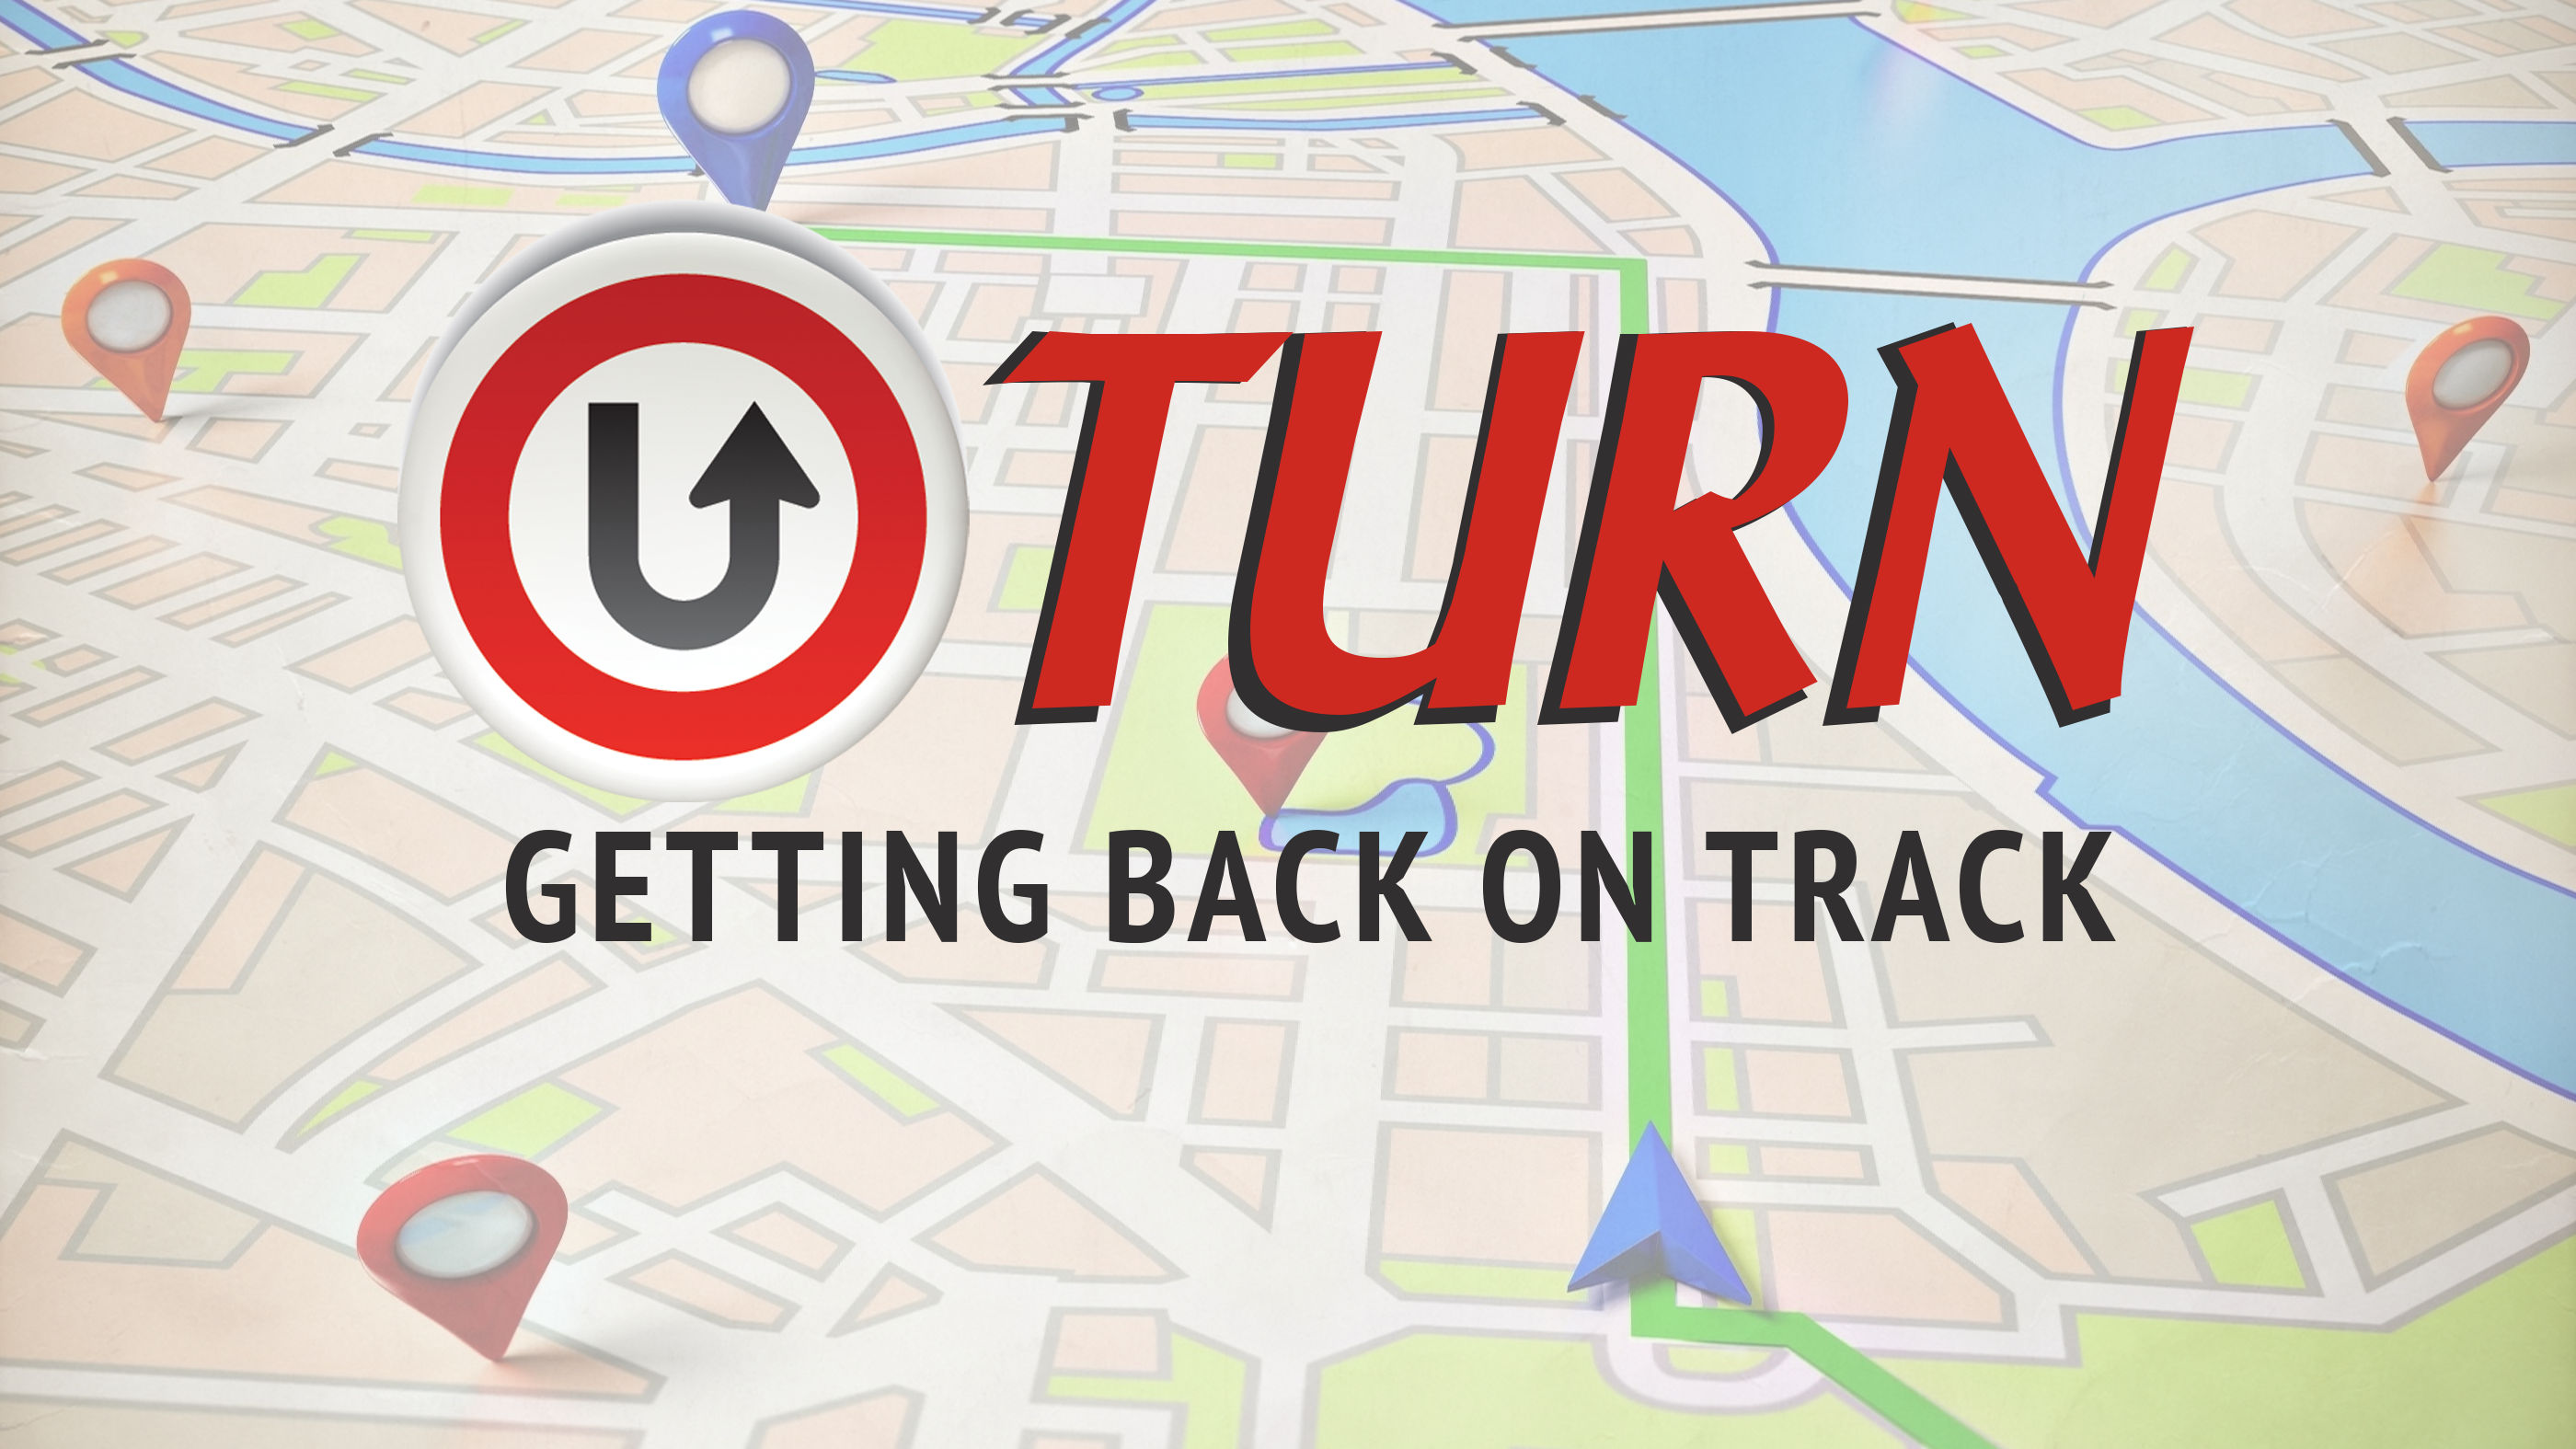 U-TURN - Getting Back on Track